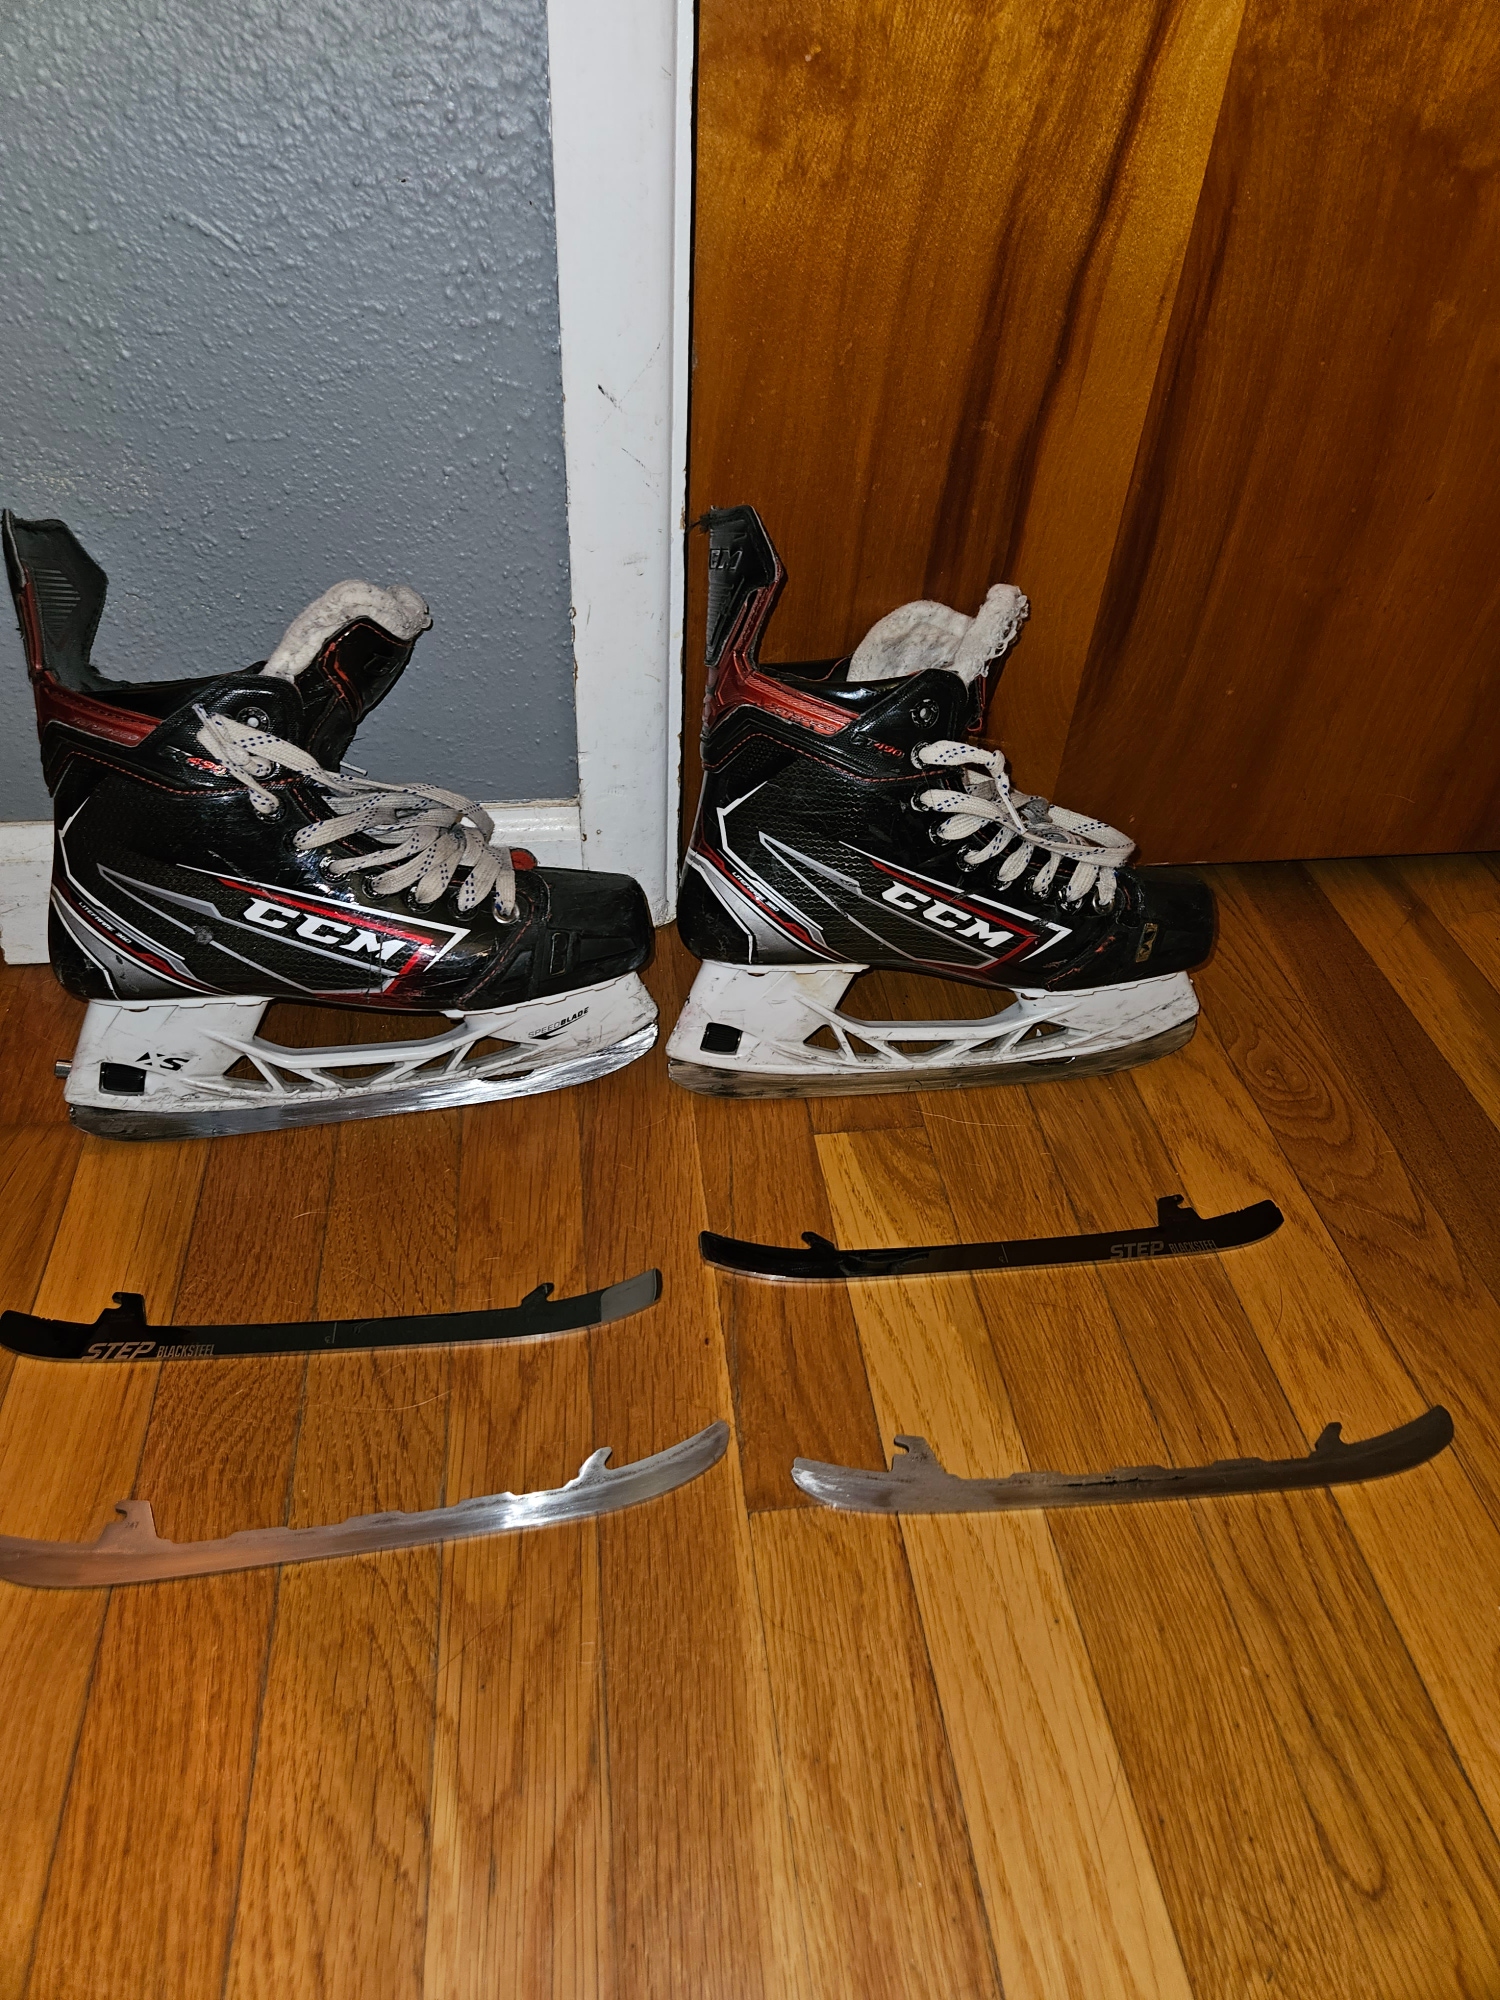 Youth Used CCM JetSpeed FT490 Hockey Skates Regular Width Size 5.5